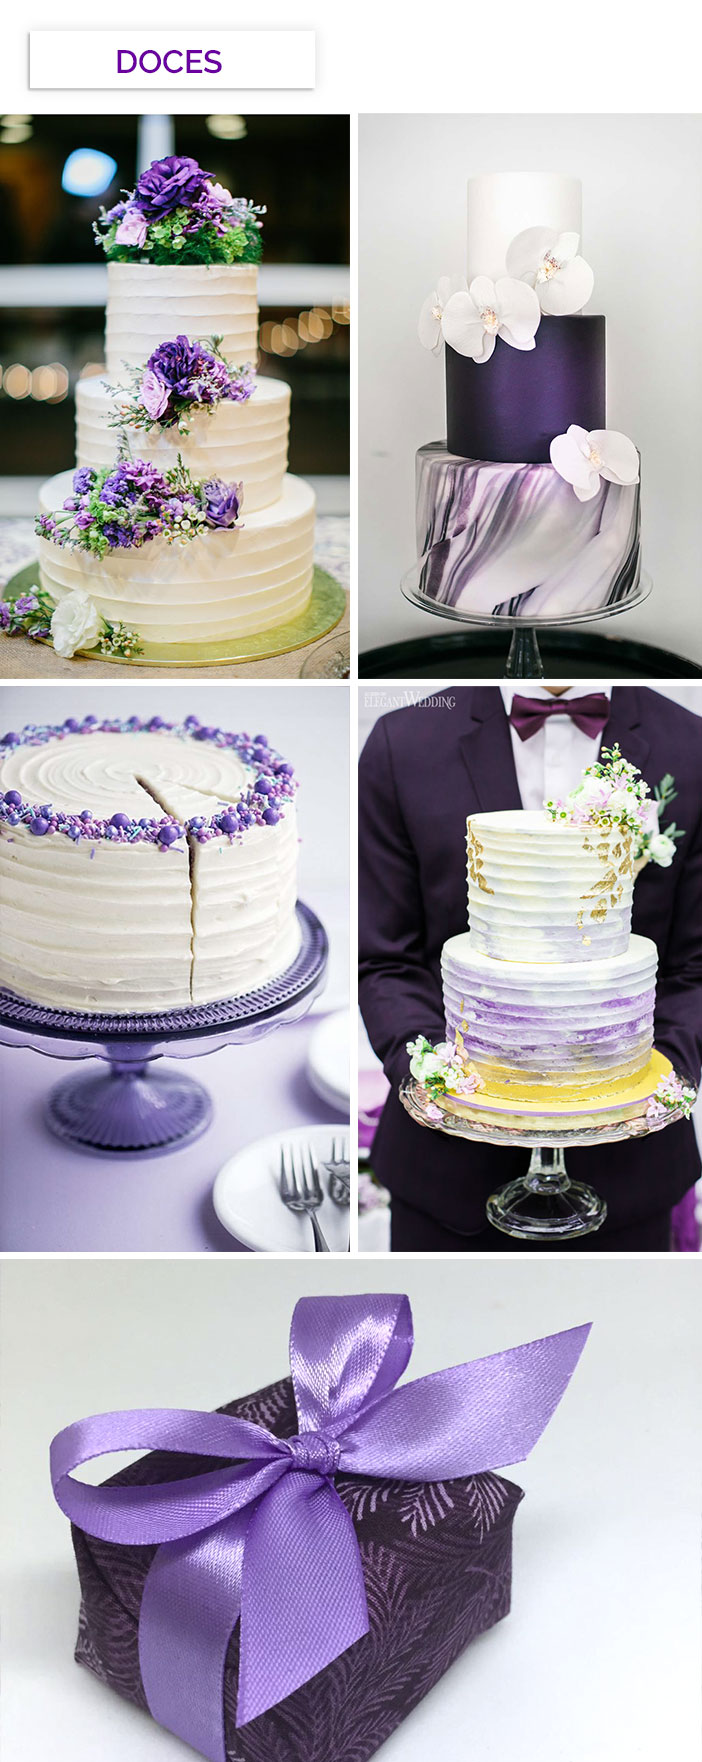 Como inserir o ultra violet no seu casamento - Doces